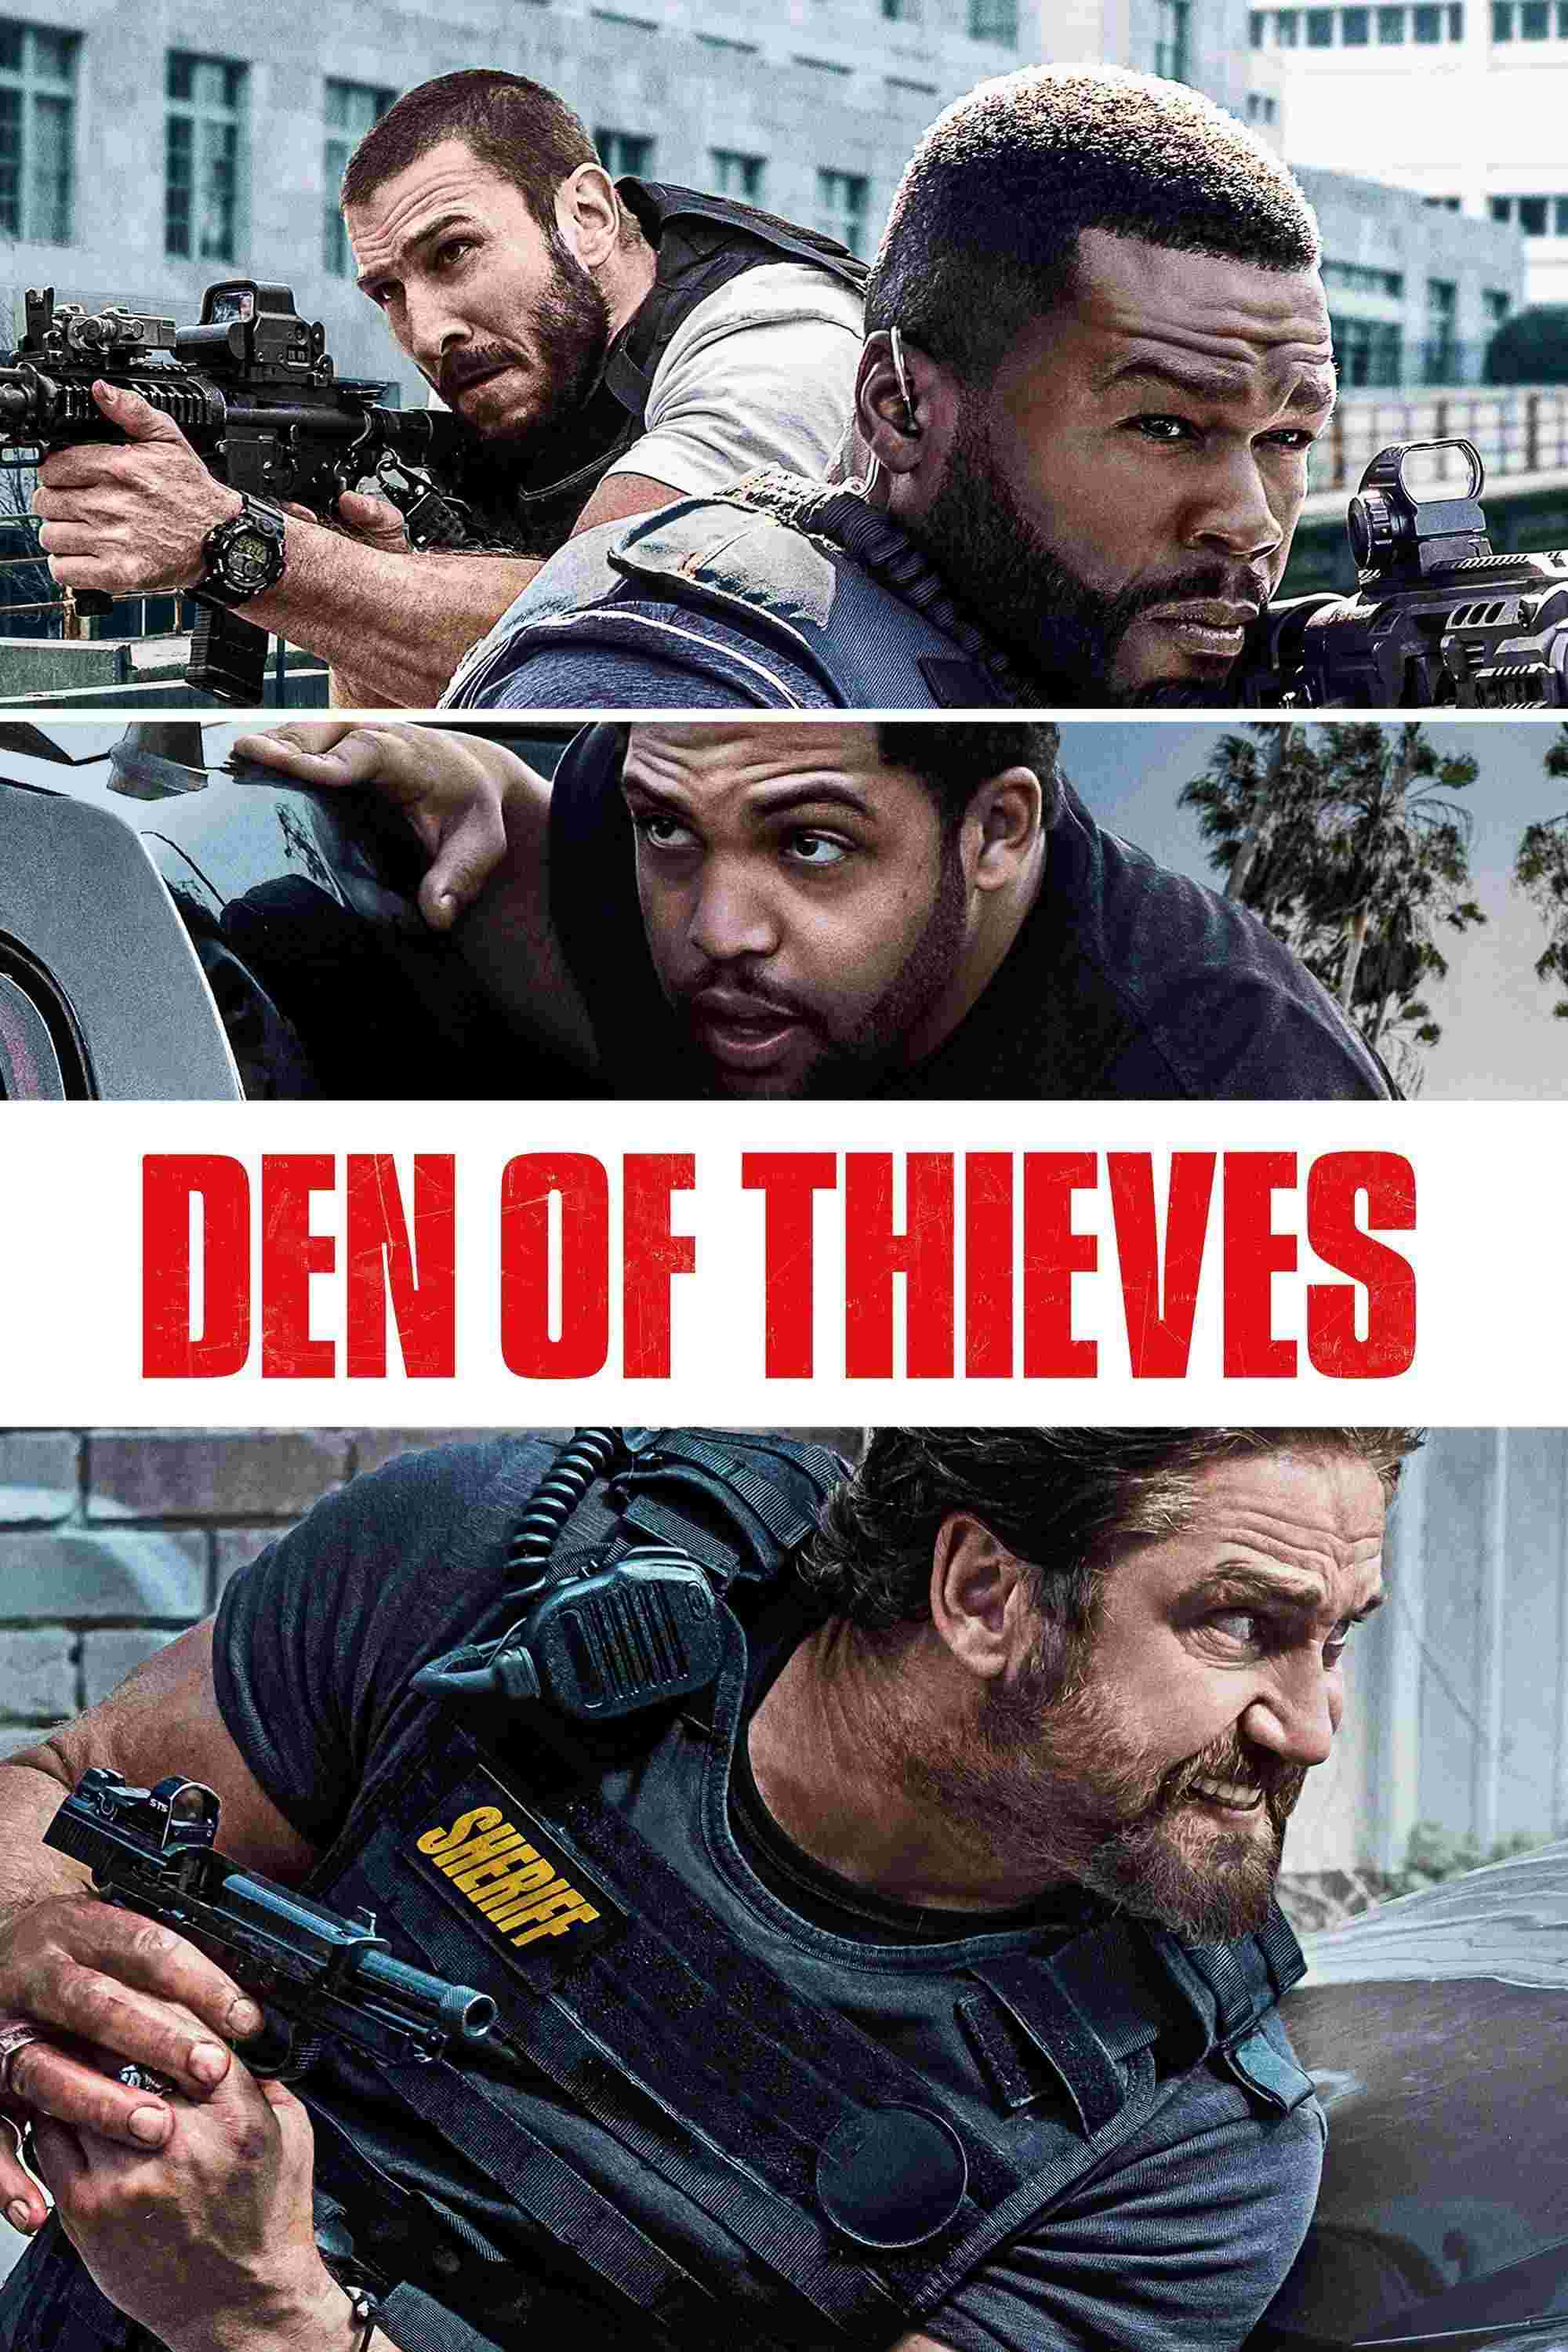 Den of Thieves (2018) Gerard Butler